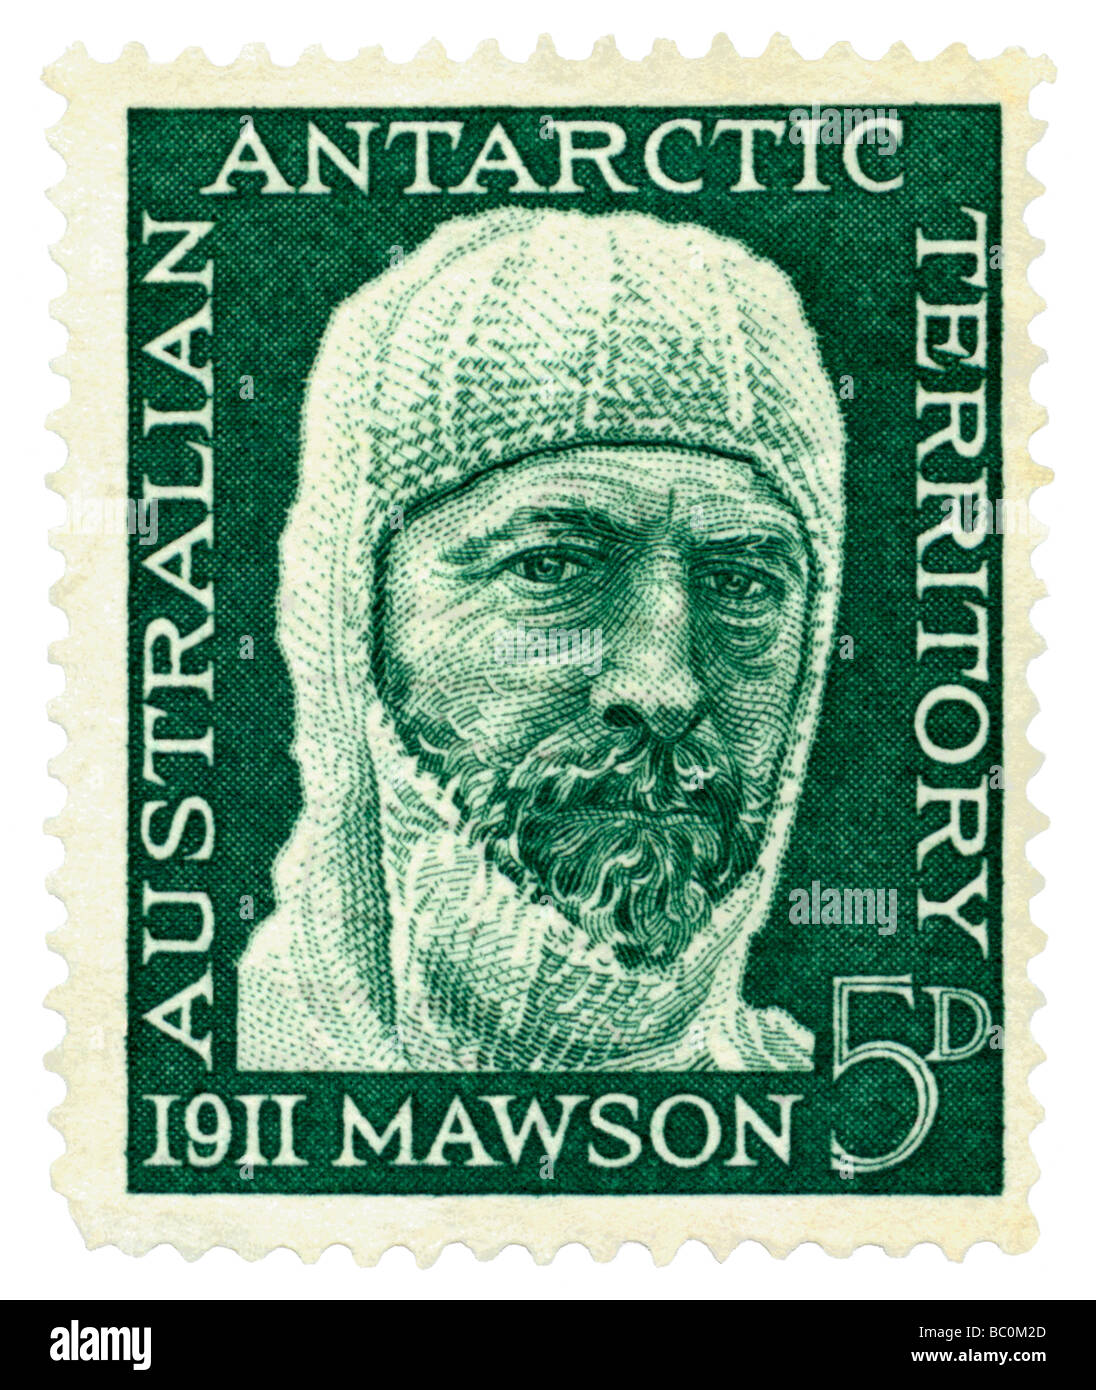 Territoire antarctique australien âgé de timbre-poste avec l'explorateur polaire Douglas Mawson Banque D'Images